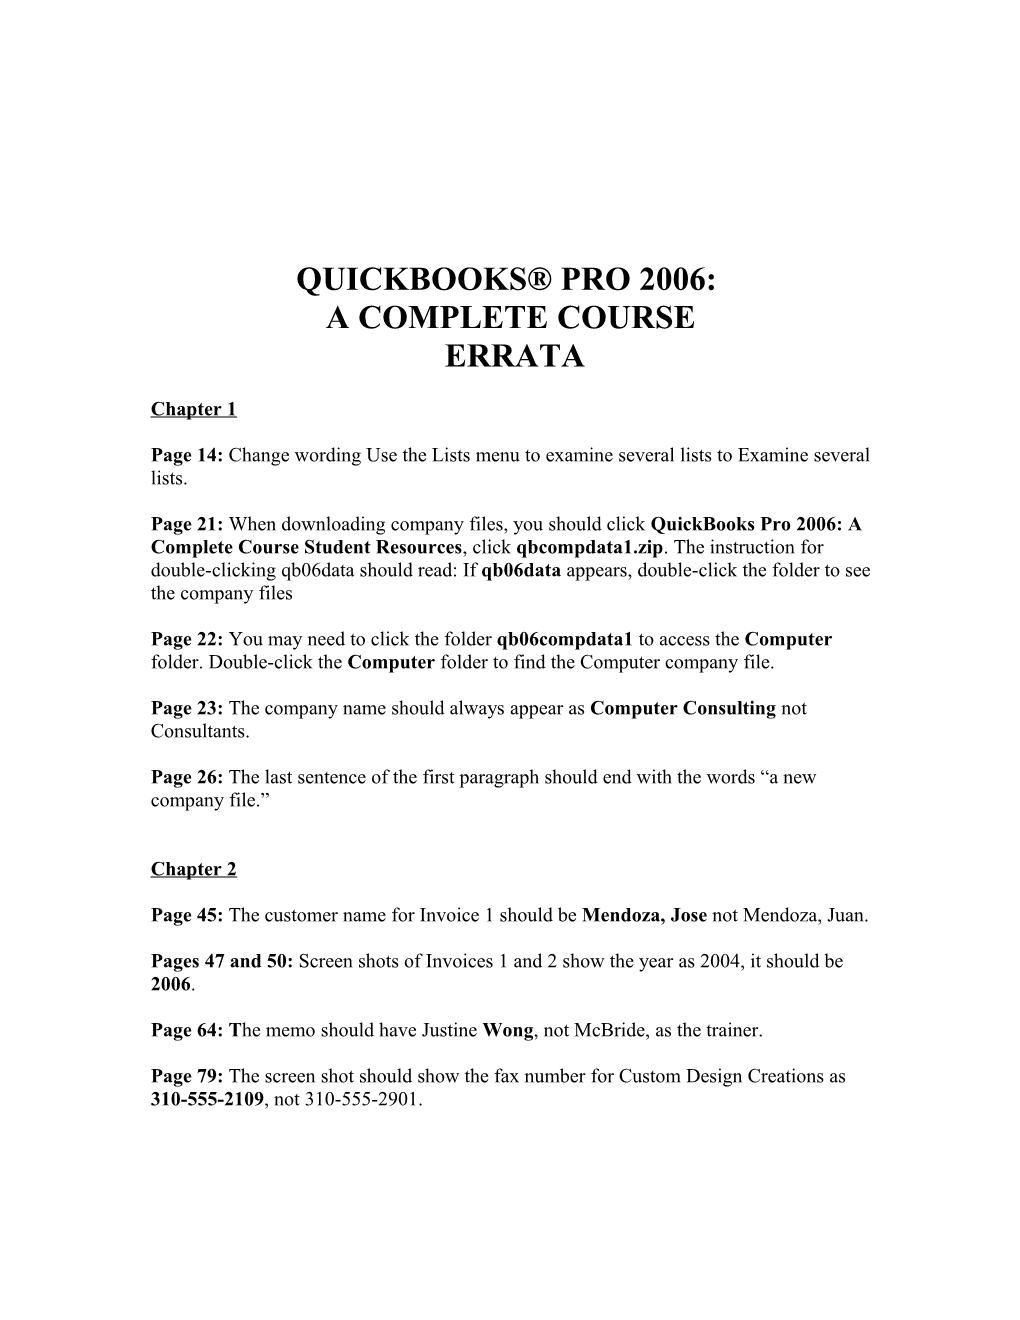 Quickbooks Pro 2006 Errata